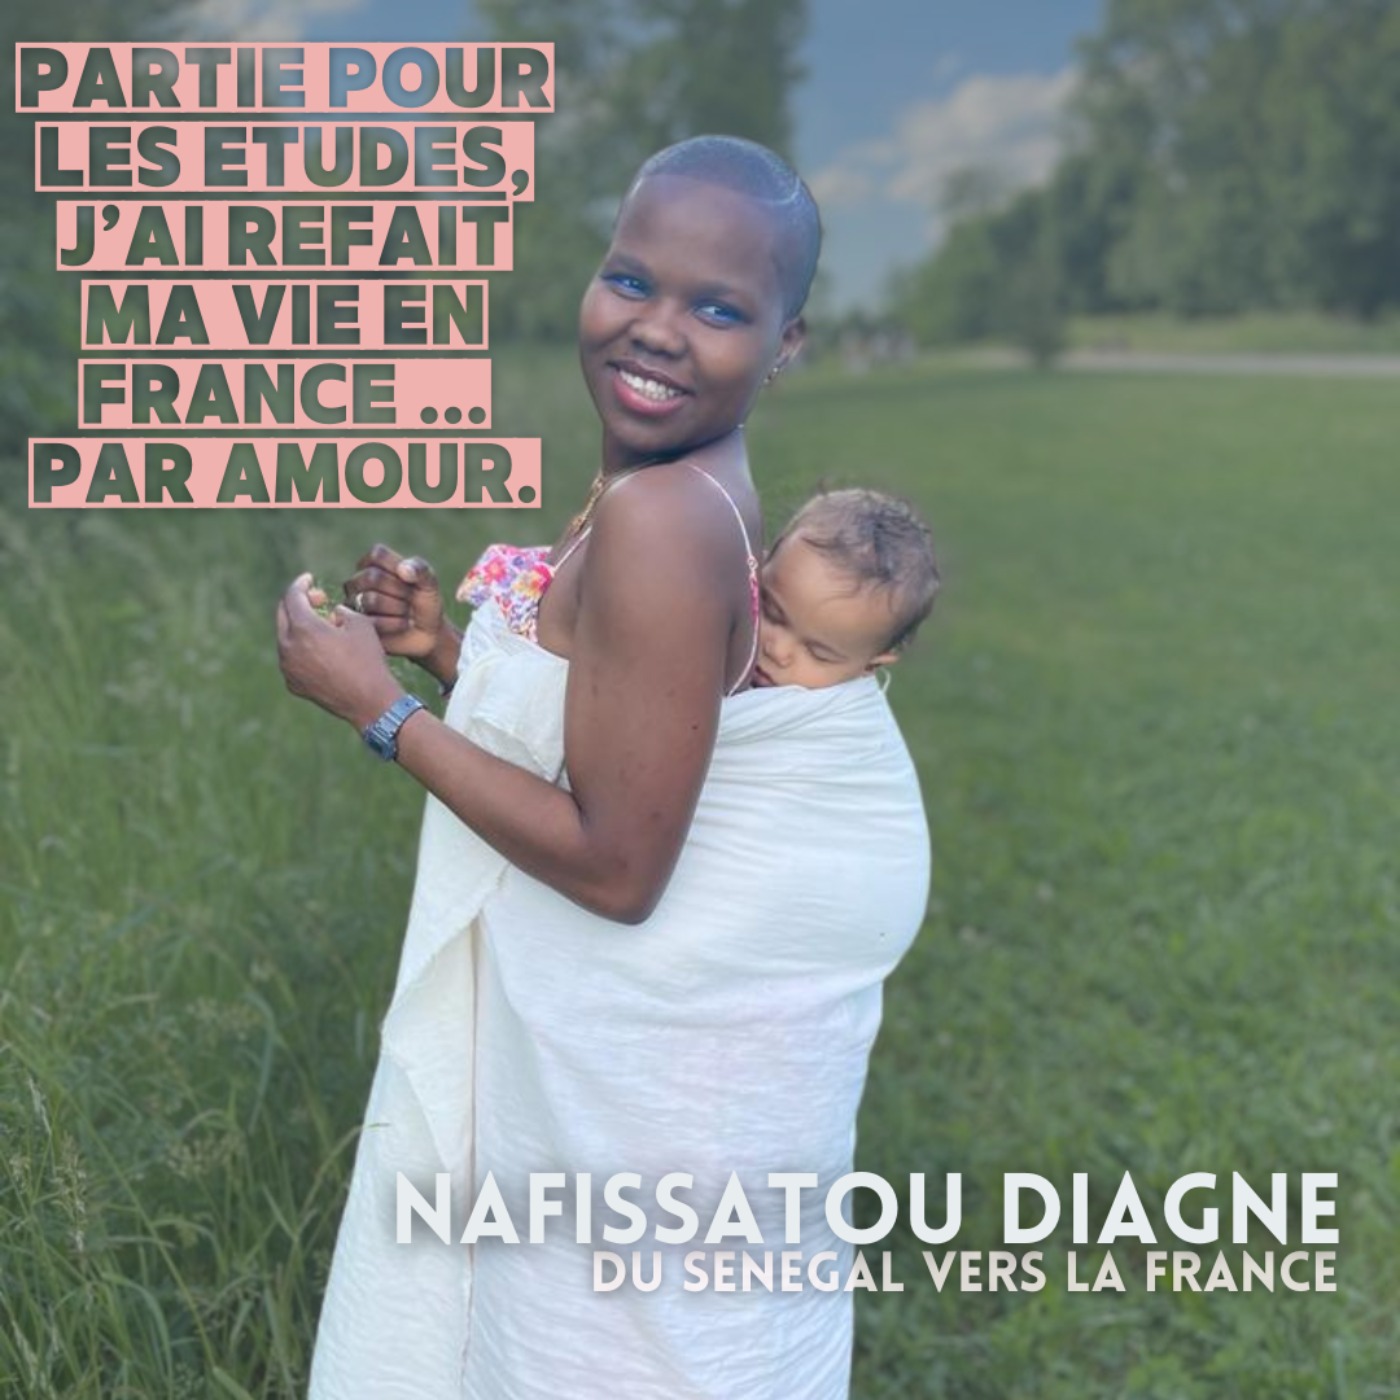 Nafissatou Diagne : ”Partie pour les études, j’ai refait ma vie en France ... par amour.”